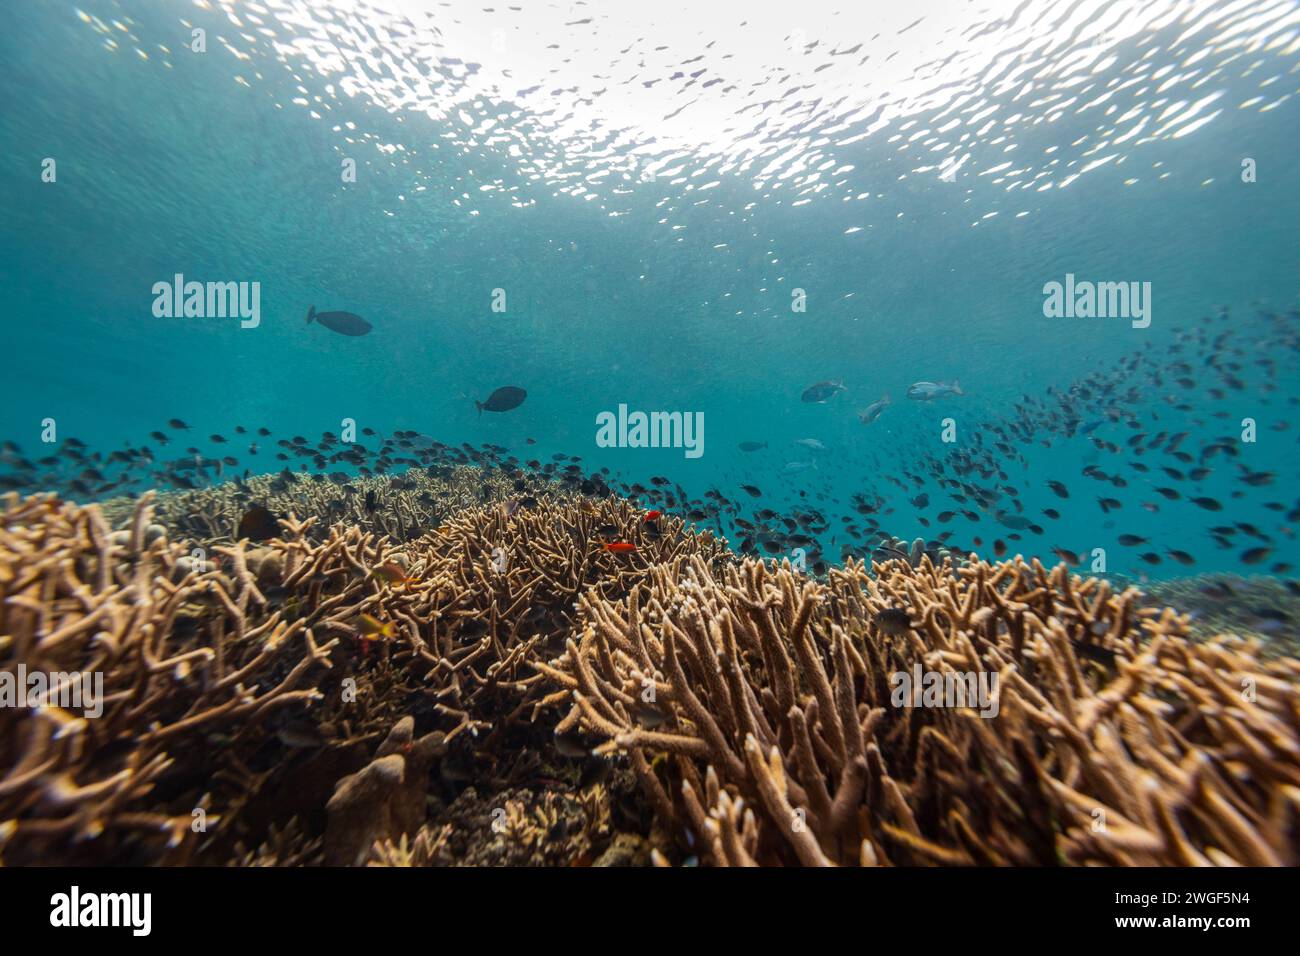 Eine große Schule farbenfroher Fische schwimmen über einer Mischung aus harten und weichen Korallen in einer tropischen Korallenrifflandschaft Stockfoto